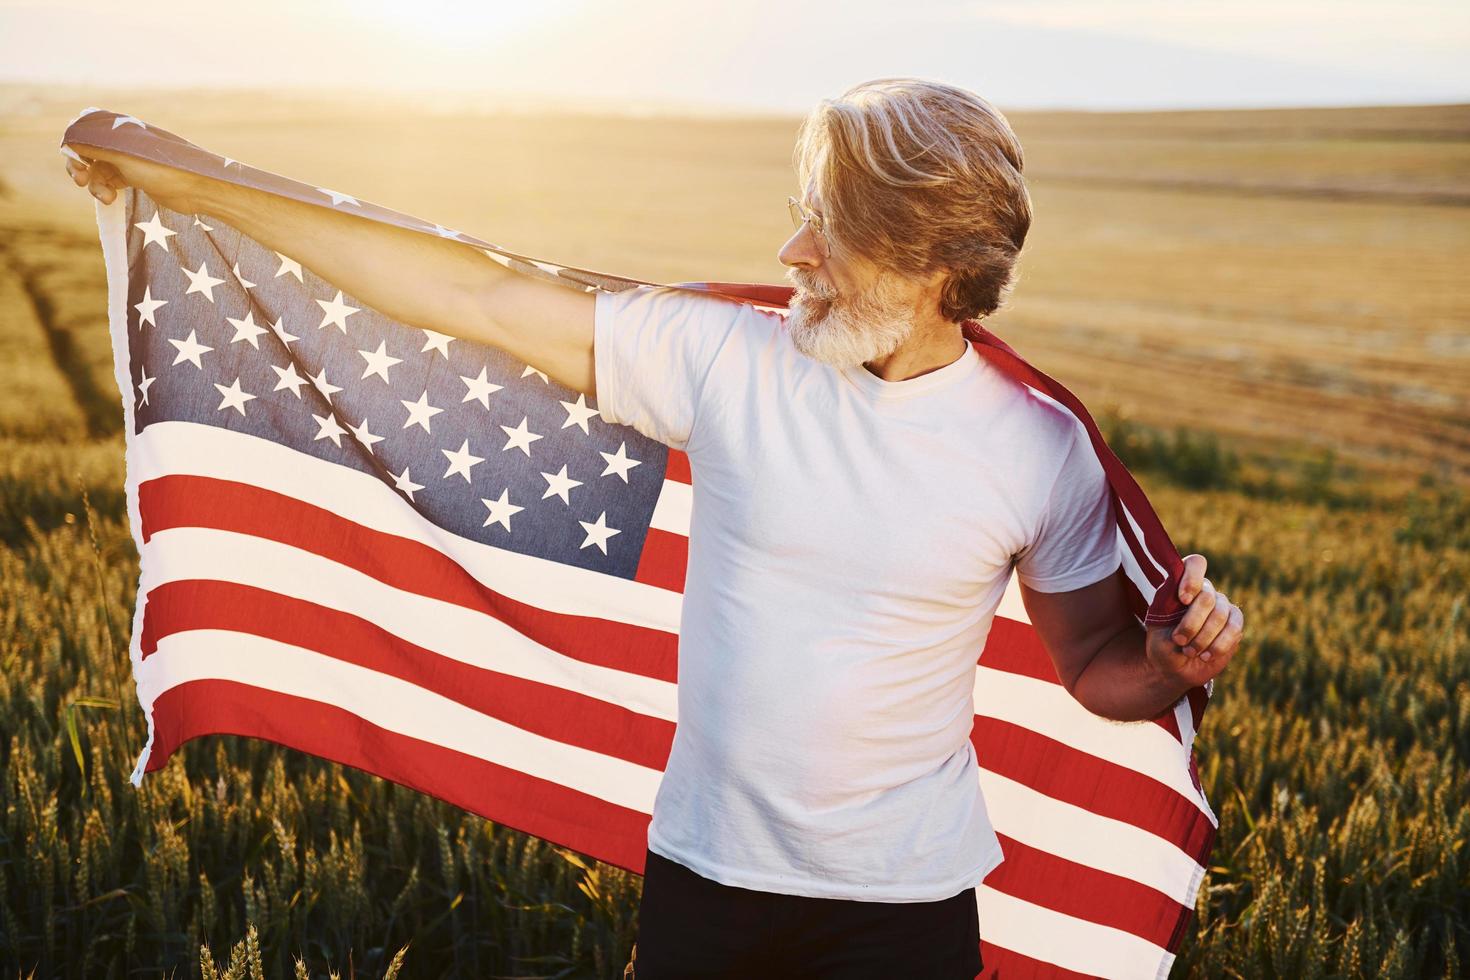 conception de la liberté. tenant le drapeau américain. Senior homme élégant aux cheveux gris et barbe sur le terrain agricole avec récolte photo